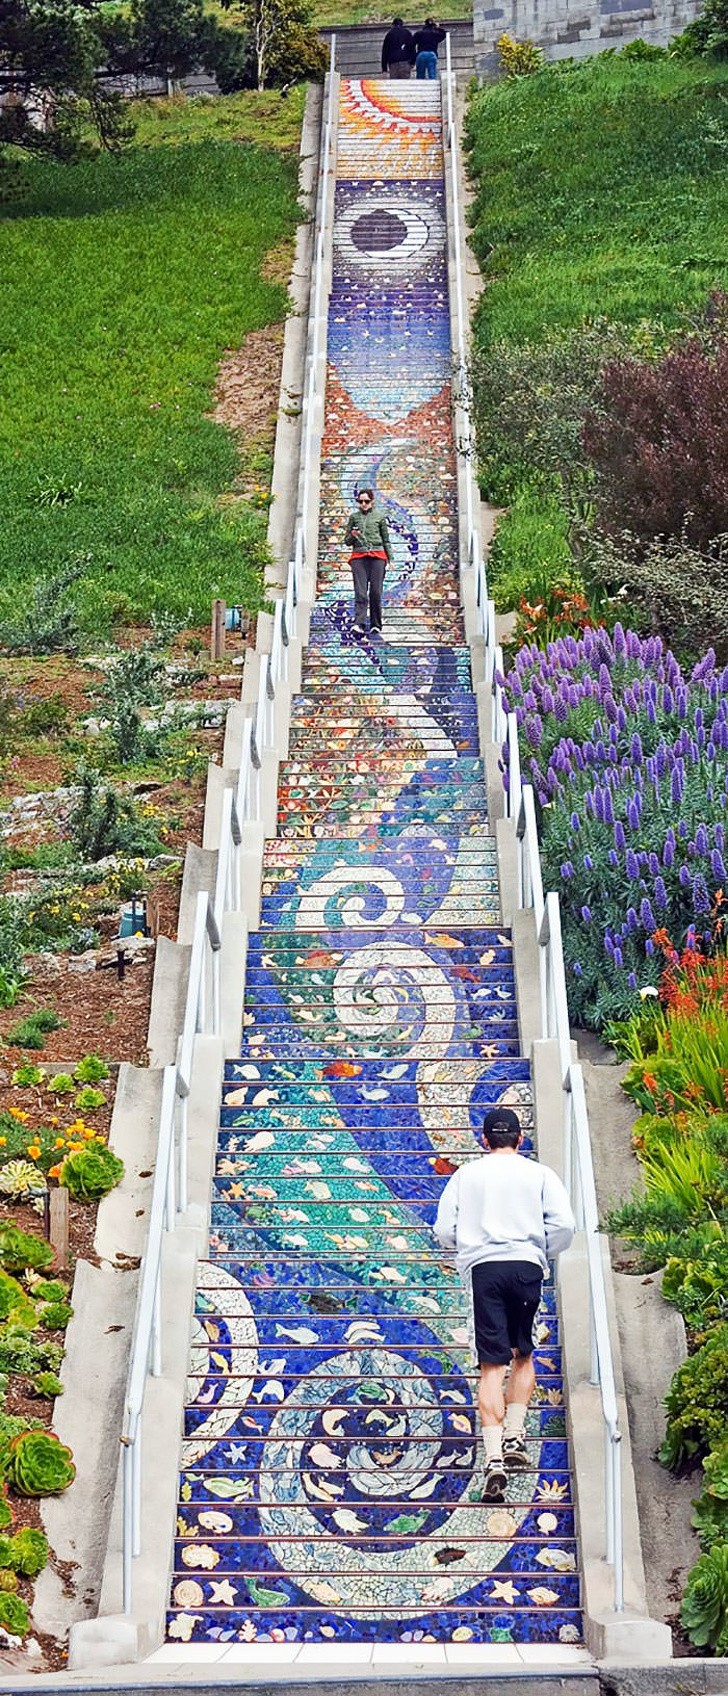 8. De mozaïeken van Aileen Barr en Colette Crutcher op deze trap in San Francisco